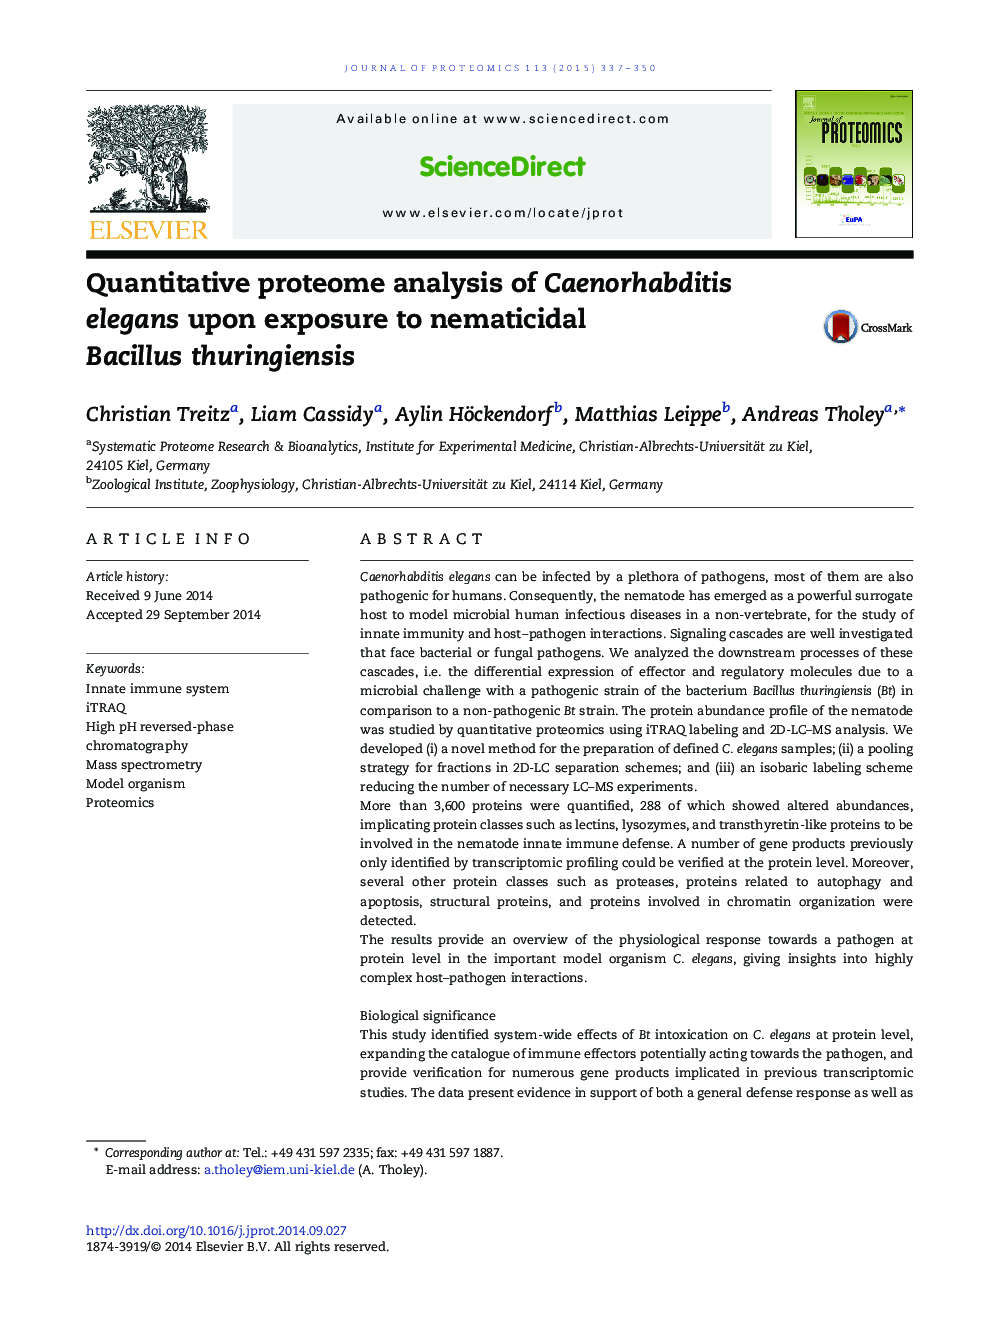 Quantitative proteome analysis of Caenorhabditis elegans upon exposure to nematicidal Bacillus thuringiensis